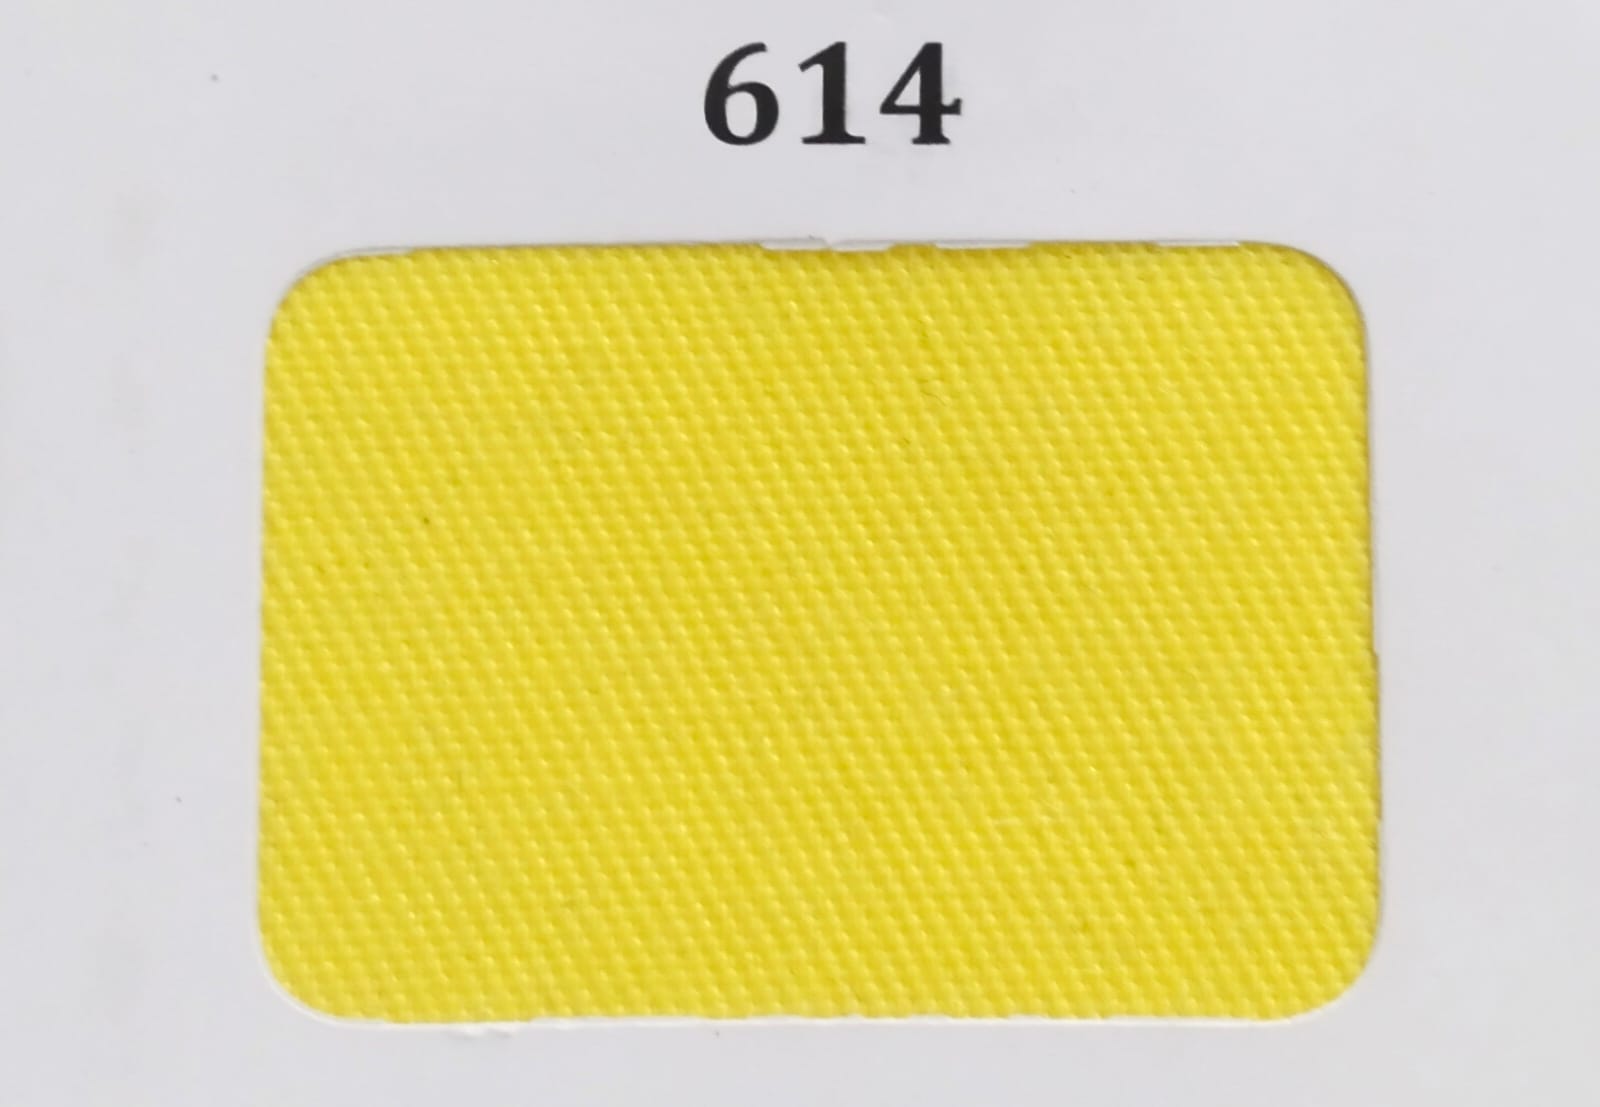 Gambar 1. Unione Kode 614 Warna Kuning Part 1